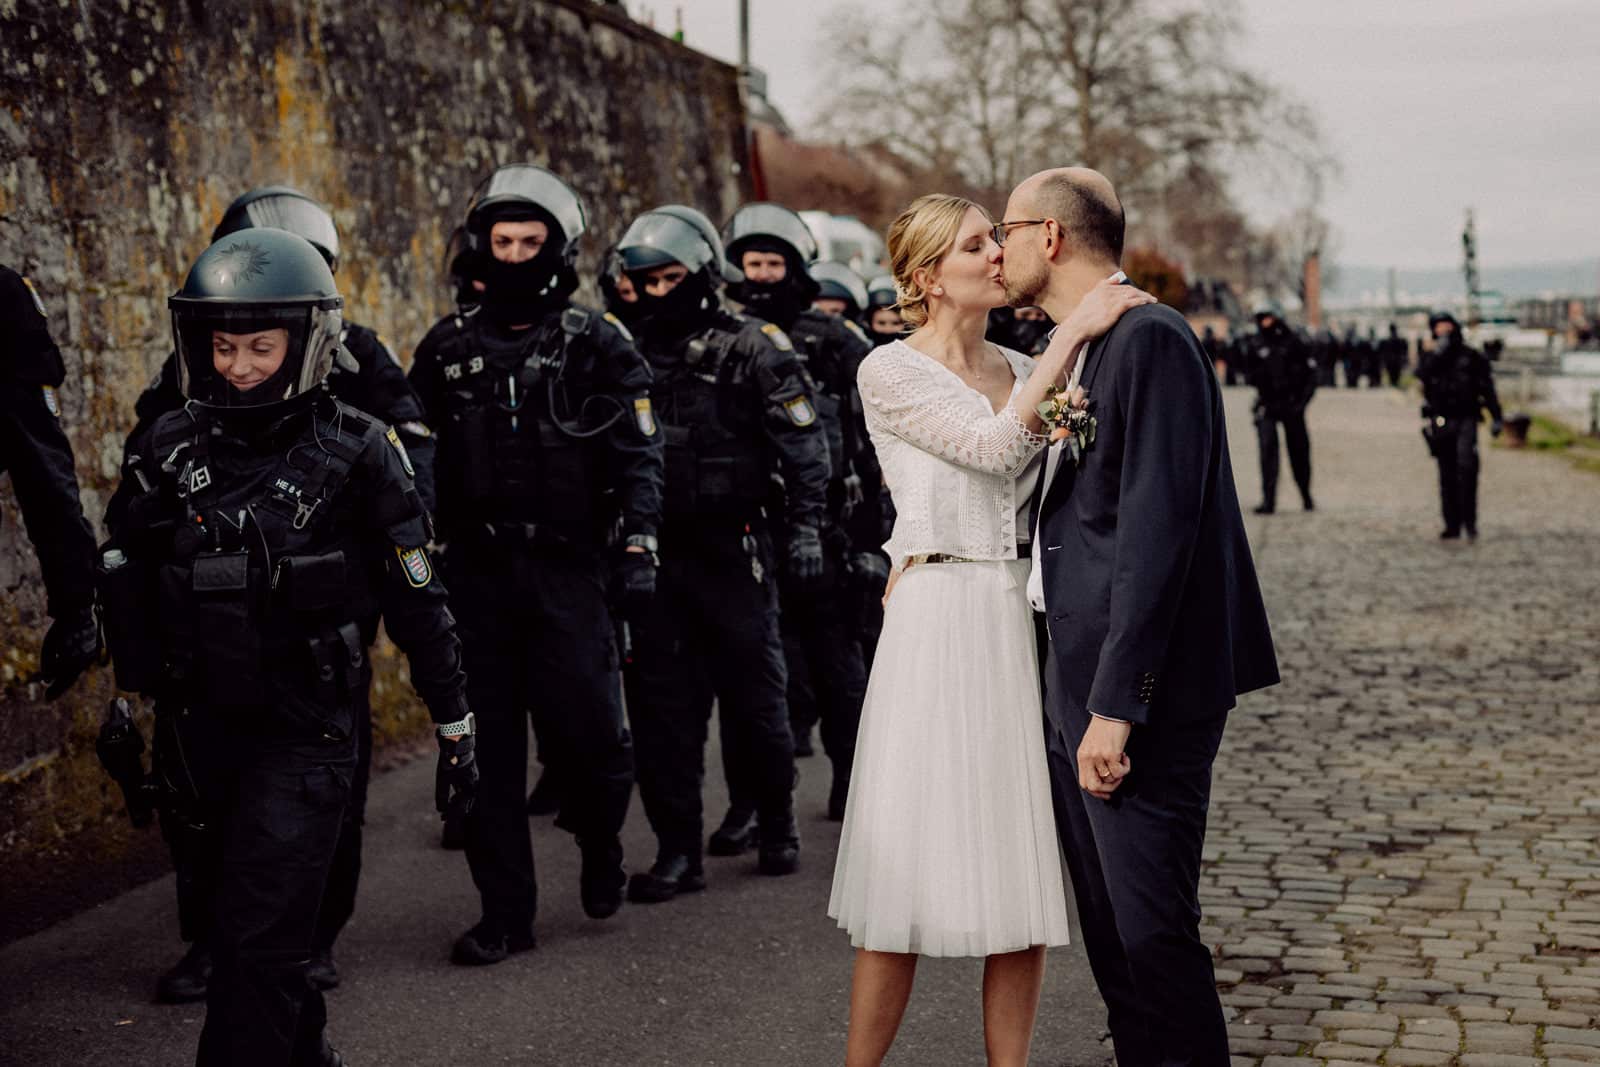 Brautpaar küsst sich und ist umgeben von Polizei in Mainz.